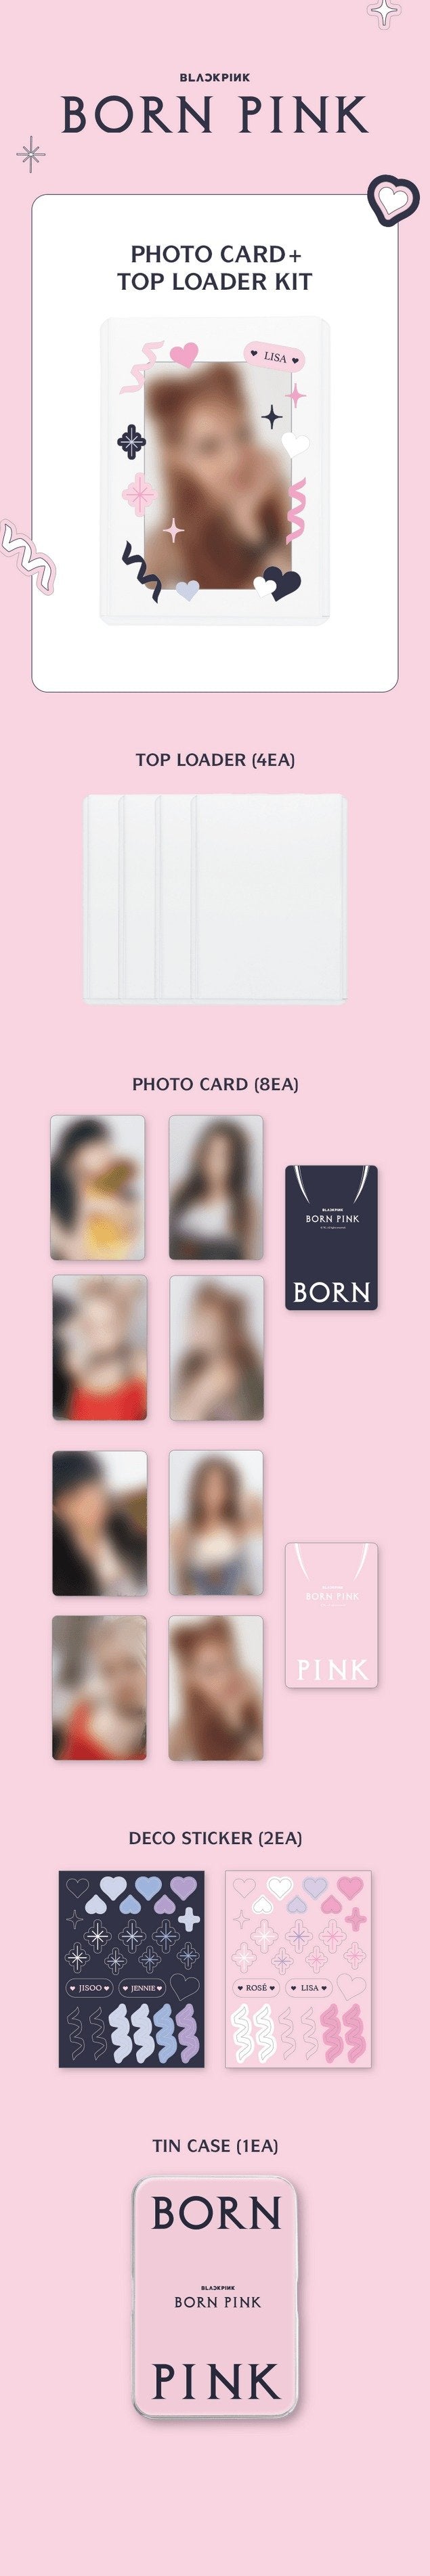 BLACKPINK [Born Pink] Photocard + Top Loader Kit